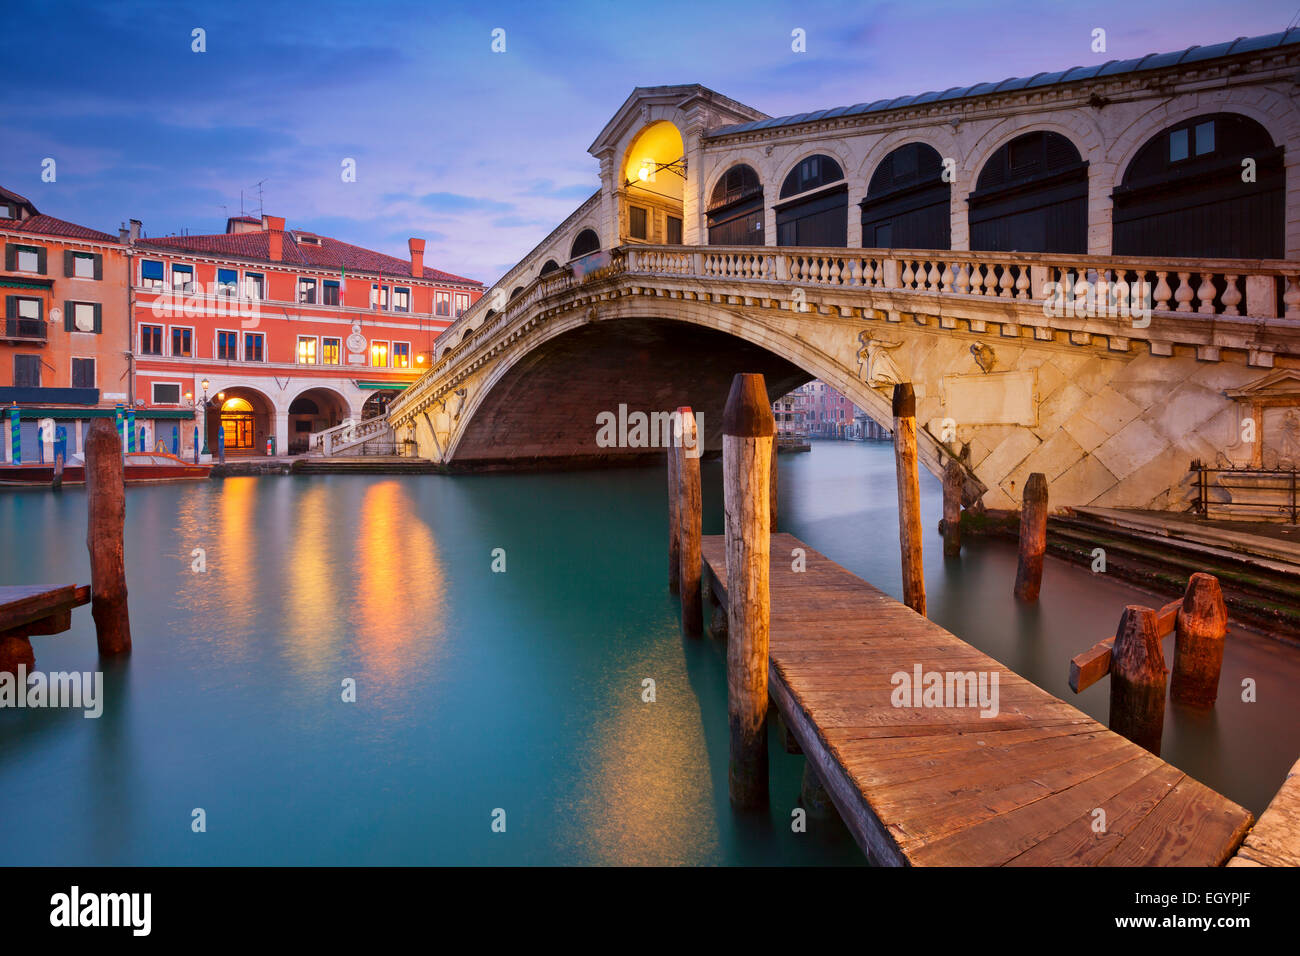 Venecia. Imagen del Puente de Rialto de Venecia al amanecer. Foto de stock